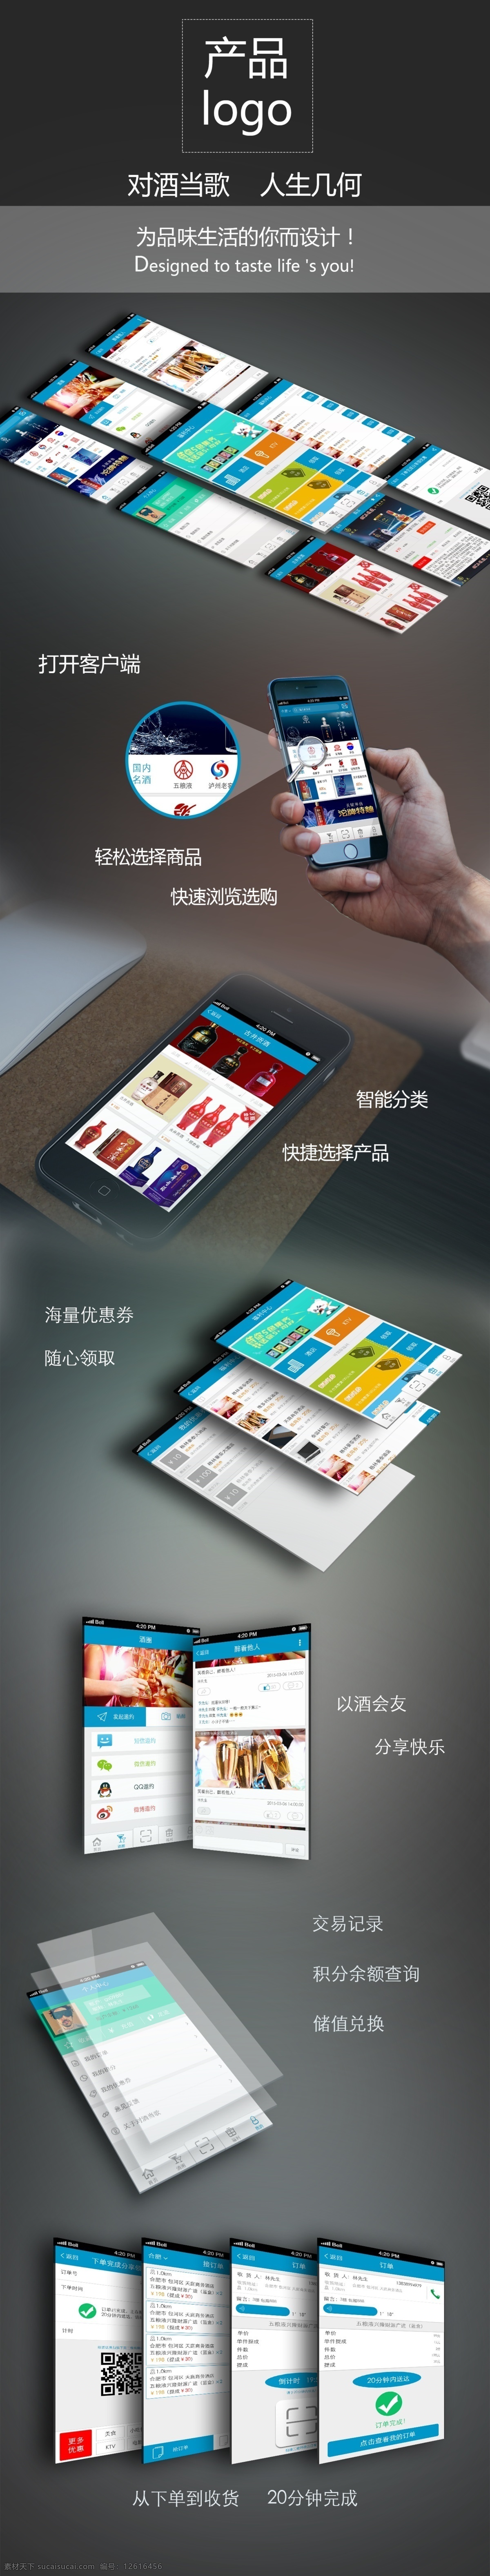 产品展示 图 app 产品 放大 聚焦 手 手机 对酒当歌 阵列 app展示 原创设计 原创海报